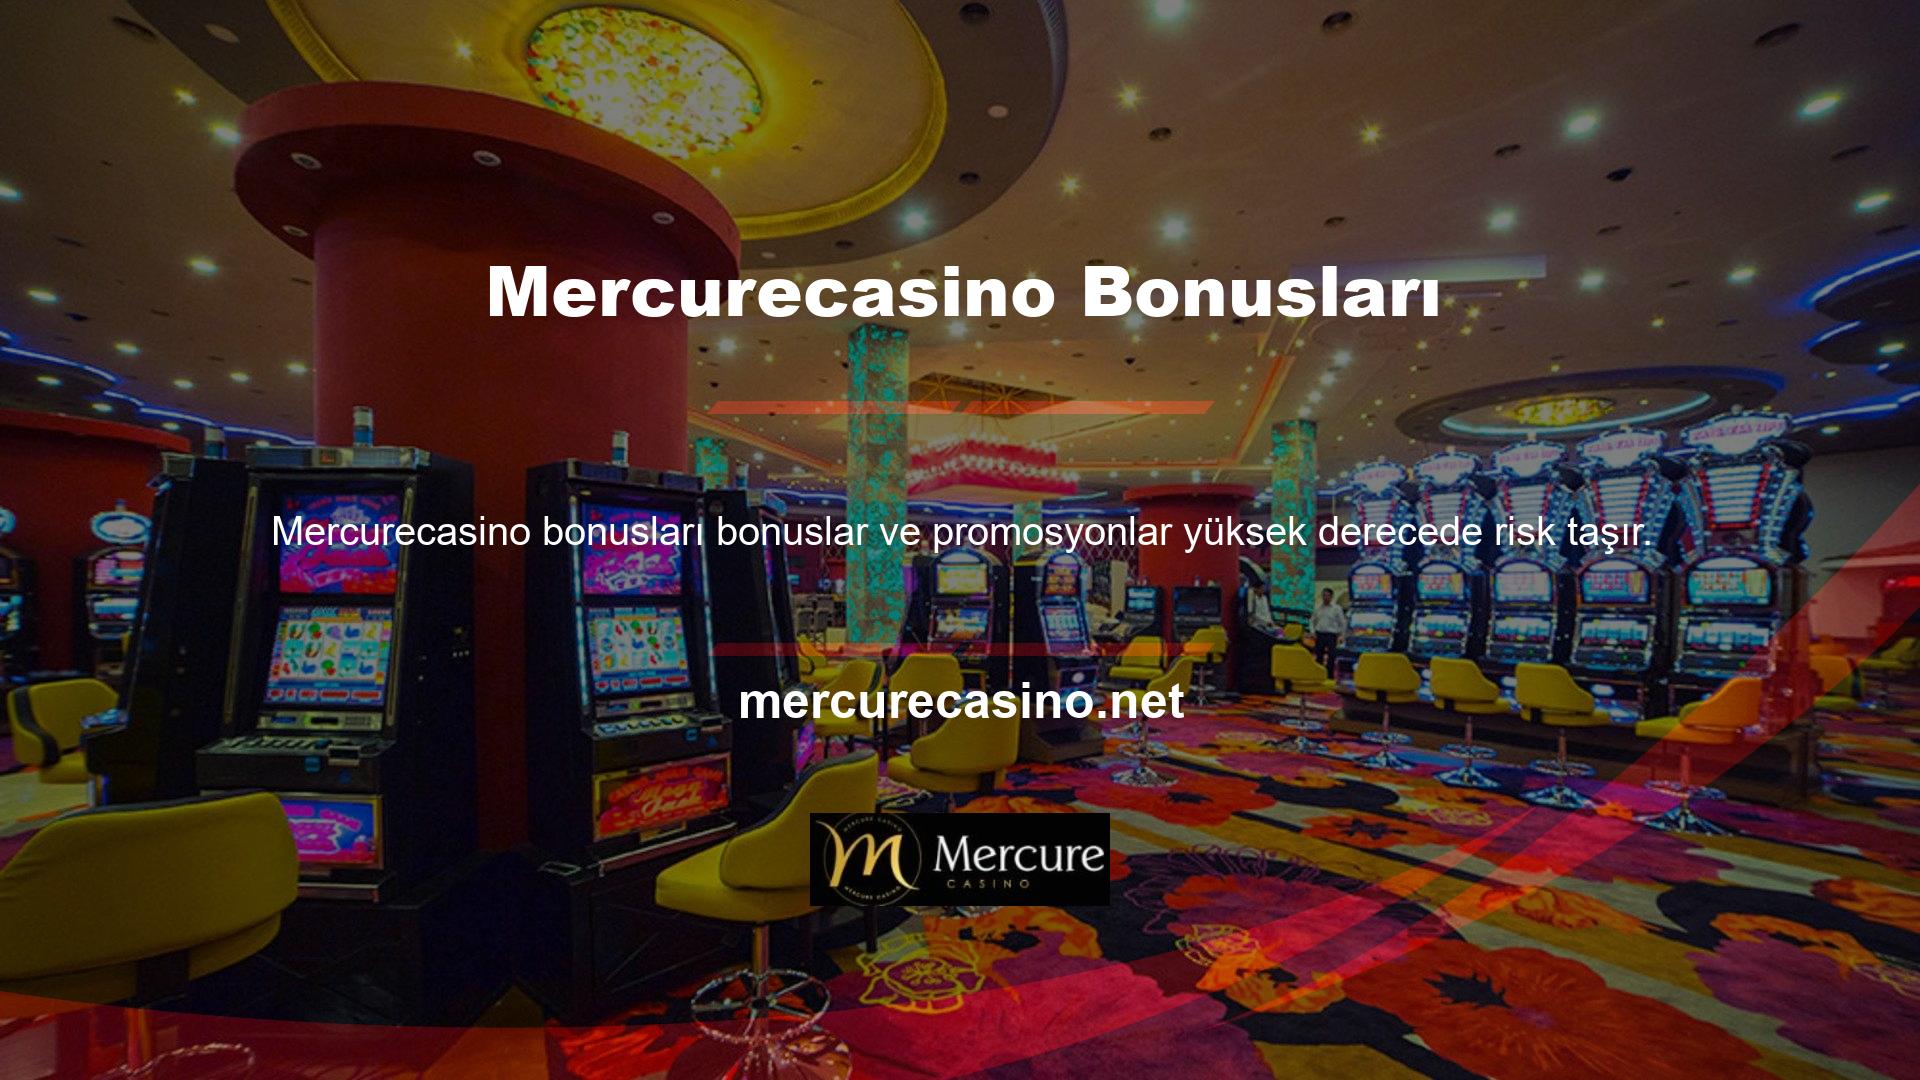 Mercurecasino üyeliği satın alan ve bonus kurallarına göre hesabına para yükleyen herkes promosyona puan verebilir